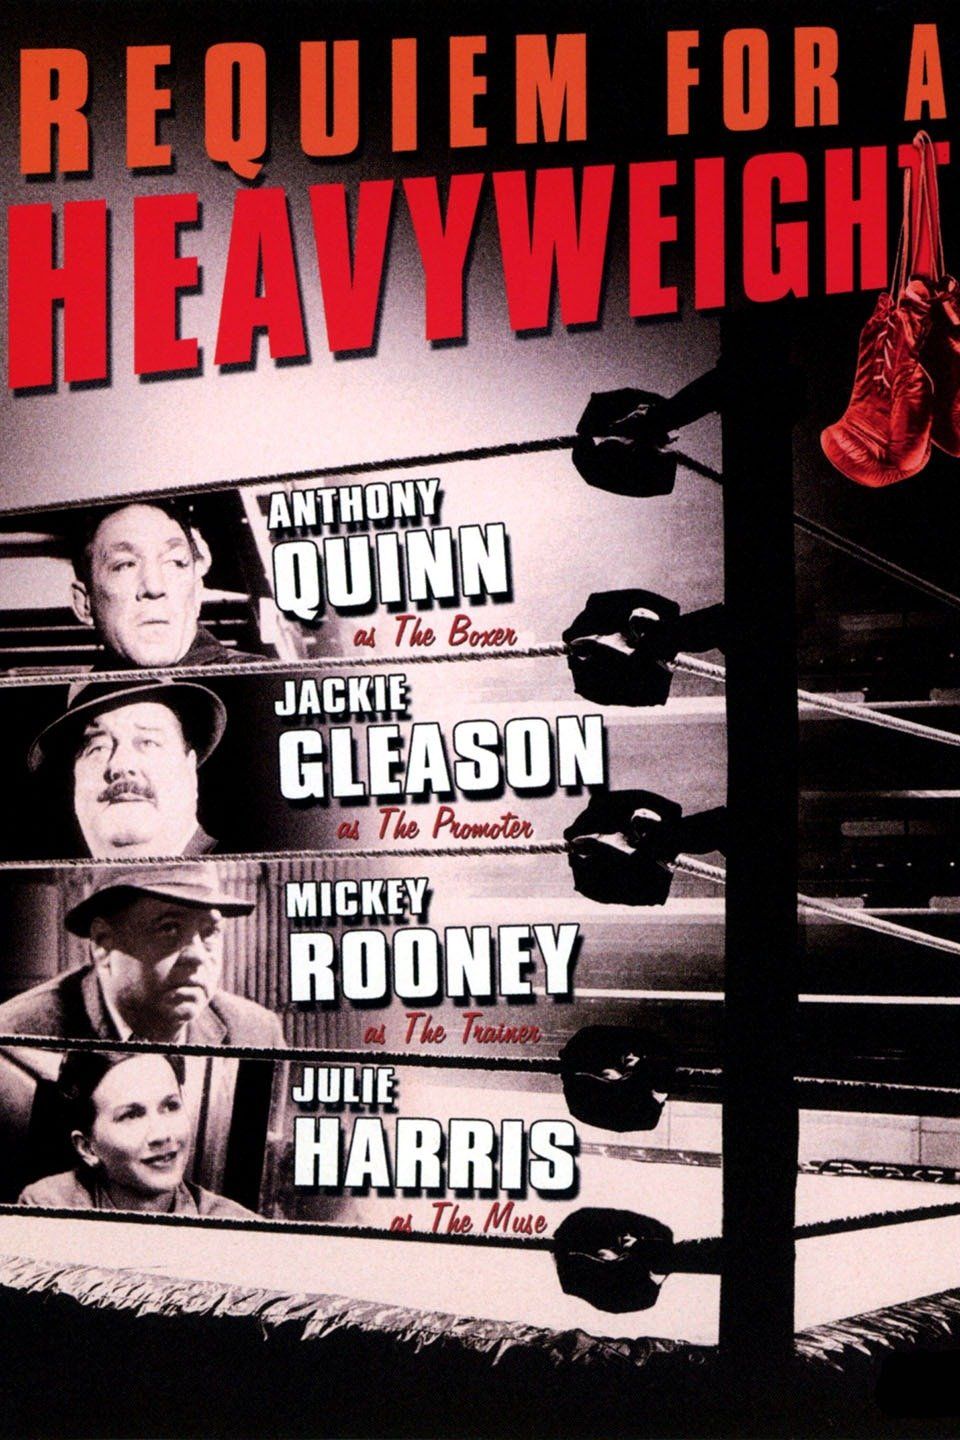 Watch Requiem for a Heavyweight (1962) Full Movie Online - Plex